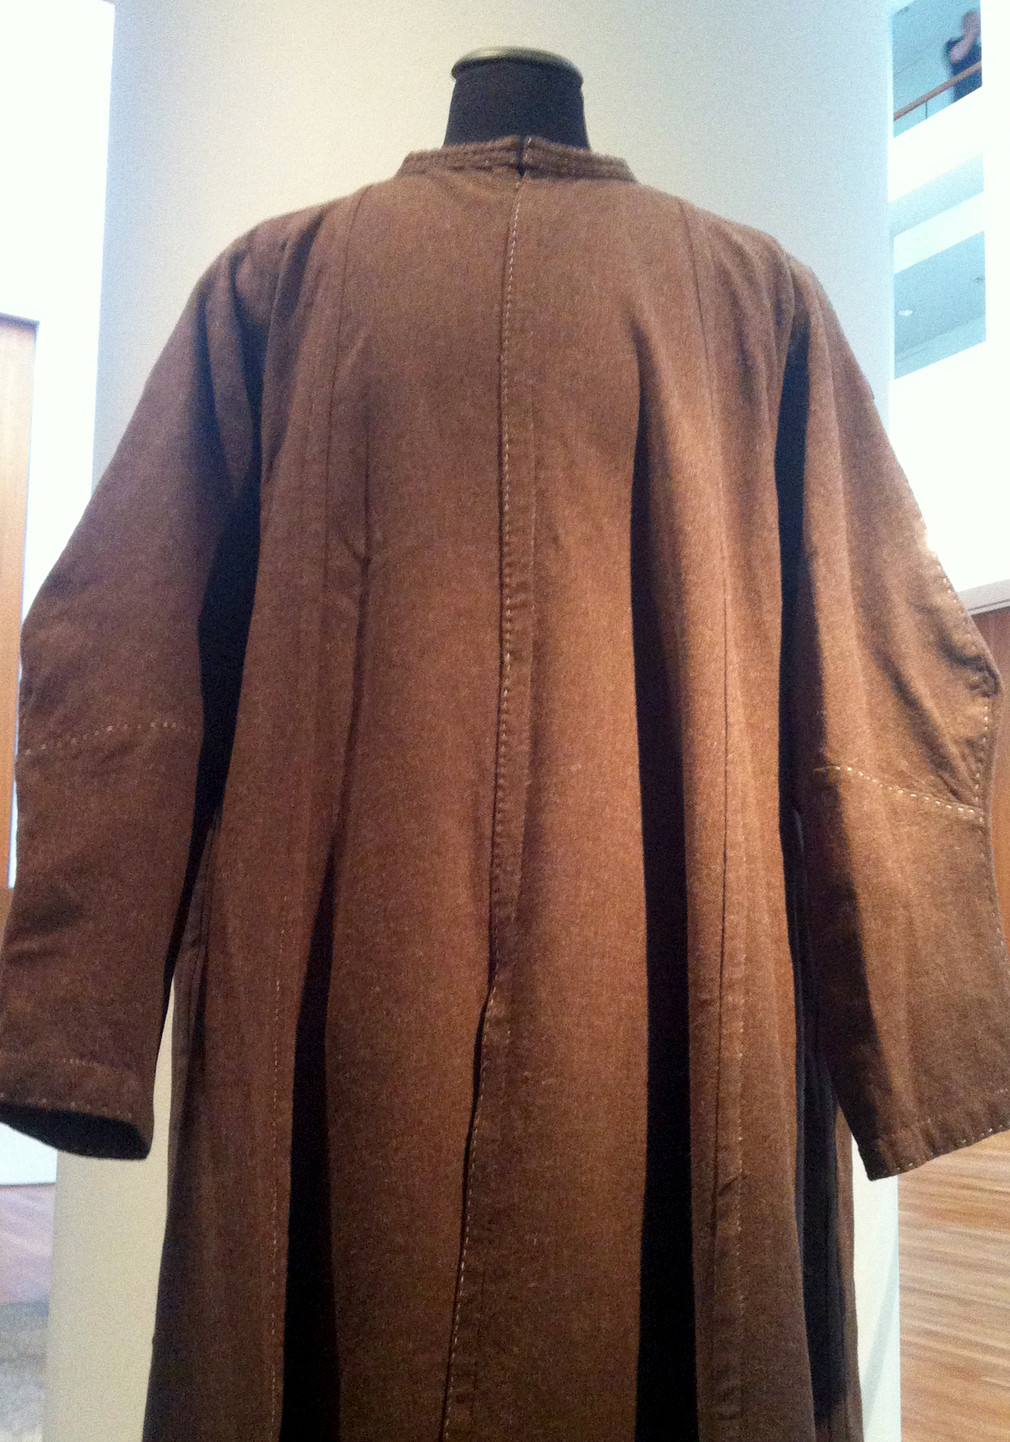 Rekonstruktion einer „Schecke“, Oberbekleidung, wie sie von Jan Hus getragen wurde